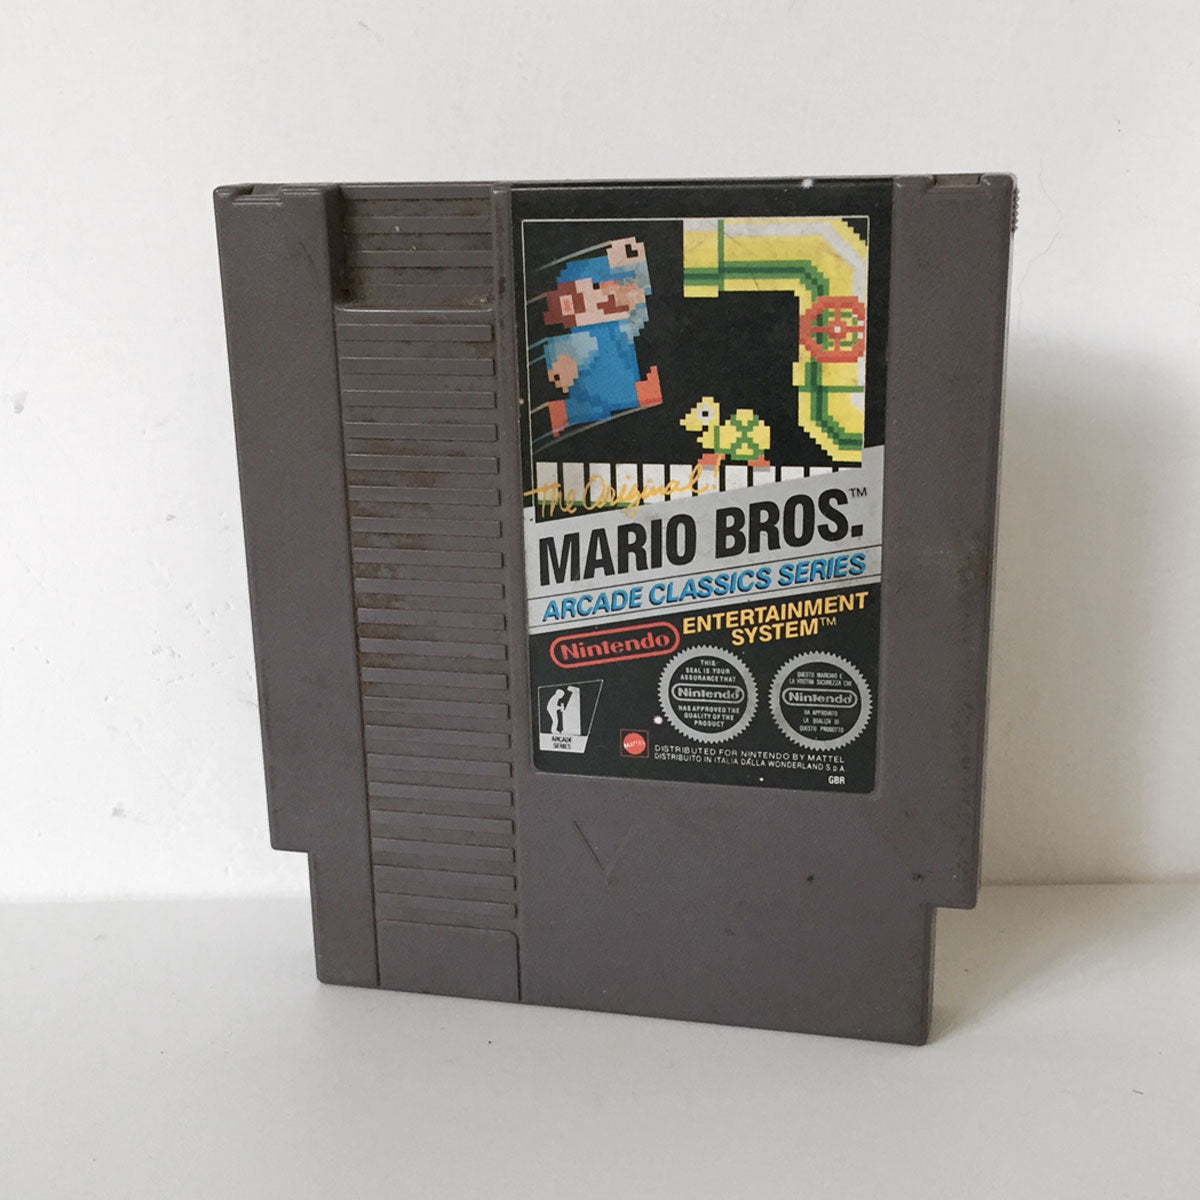 Mario Bros Arcade Classics Series